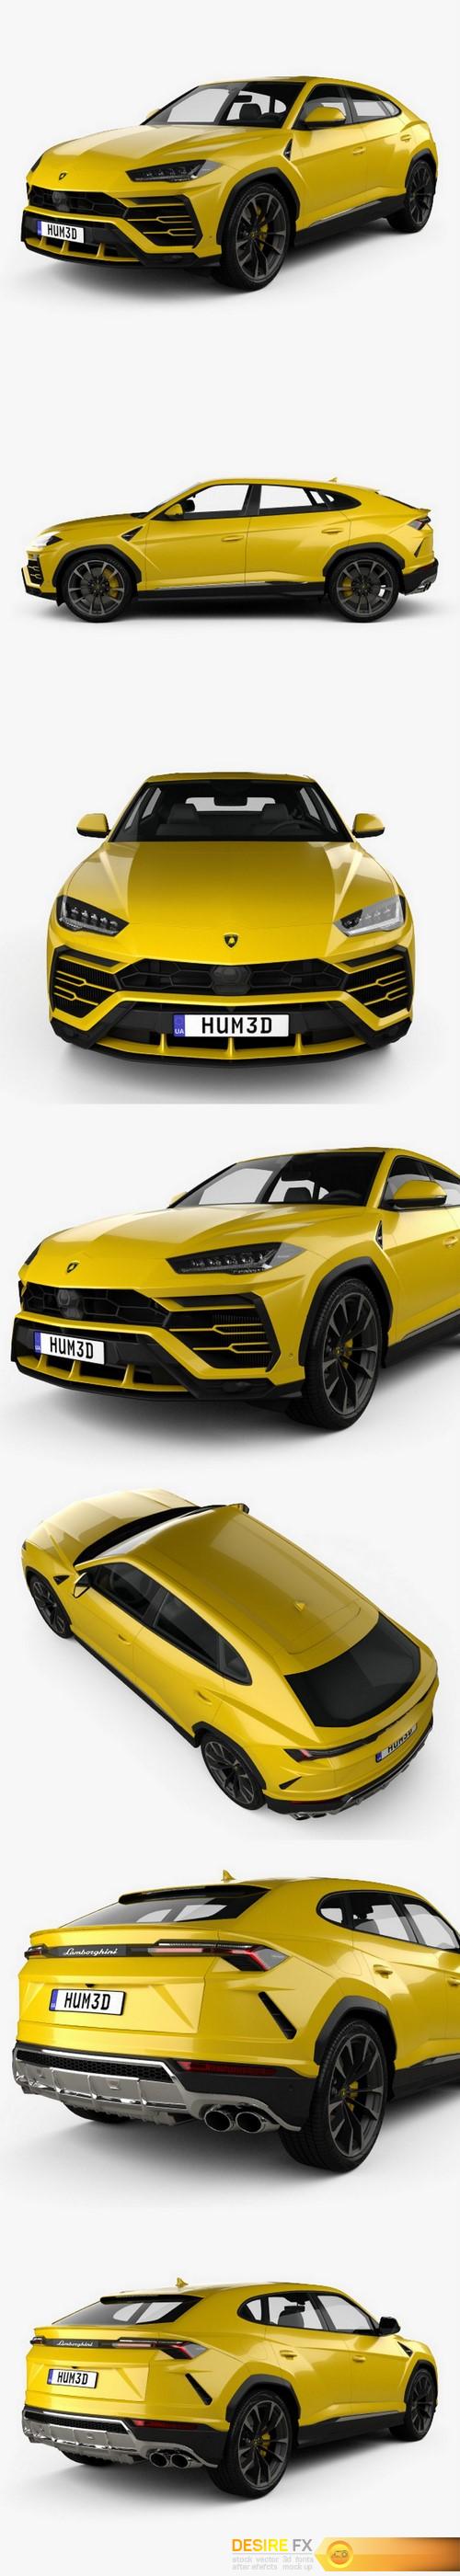 Download Desire Fx 3d Models Lamborghini Urus 2019 3d Model